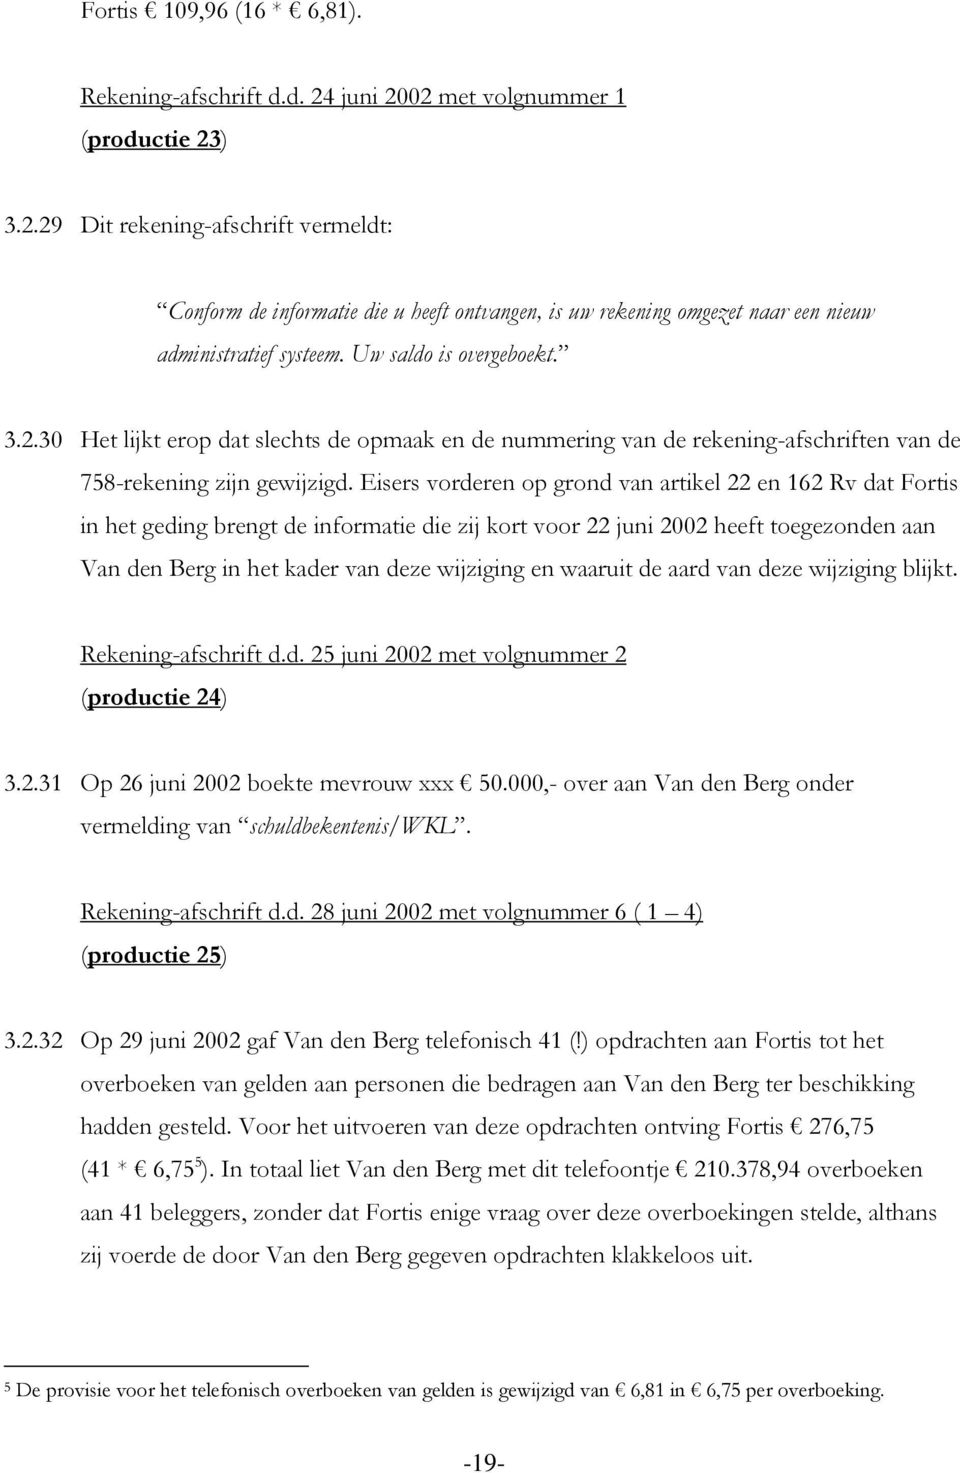 Eisers vorderen op grond van artikel 22 en 162 Rv dat Fortis in het geding brengt de informatie die zij kort voor 22 juni 2002 heeft toegezonden aan Van den Berg in het kader van deze wijziging en